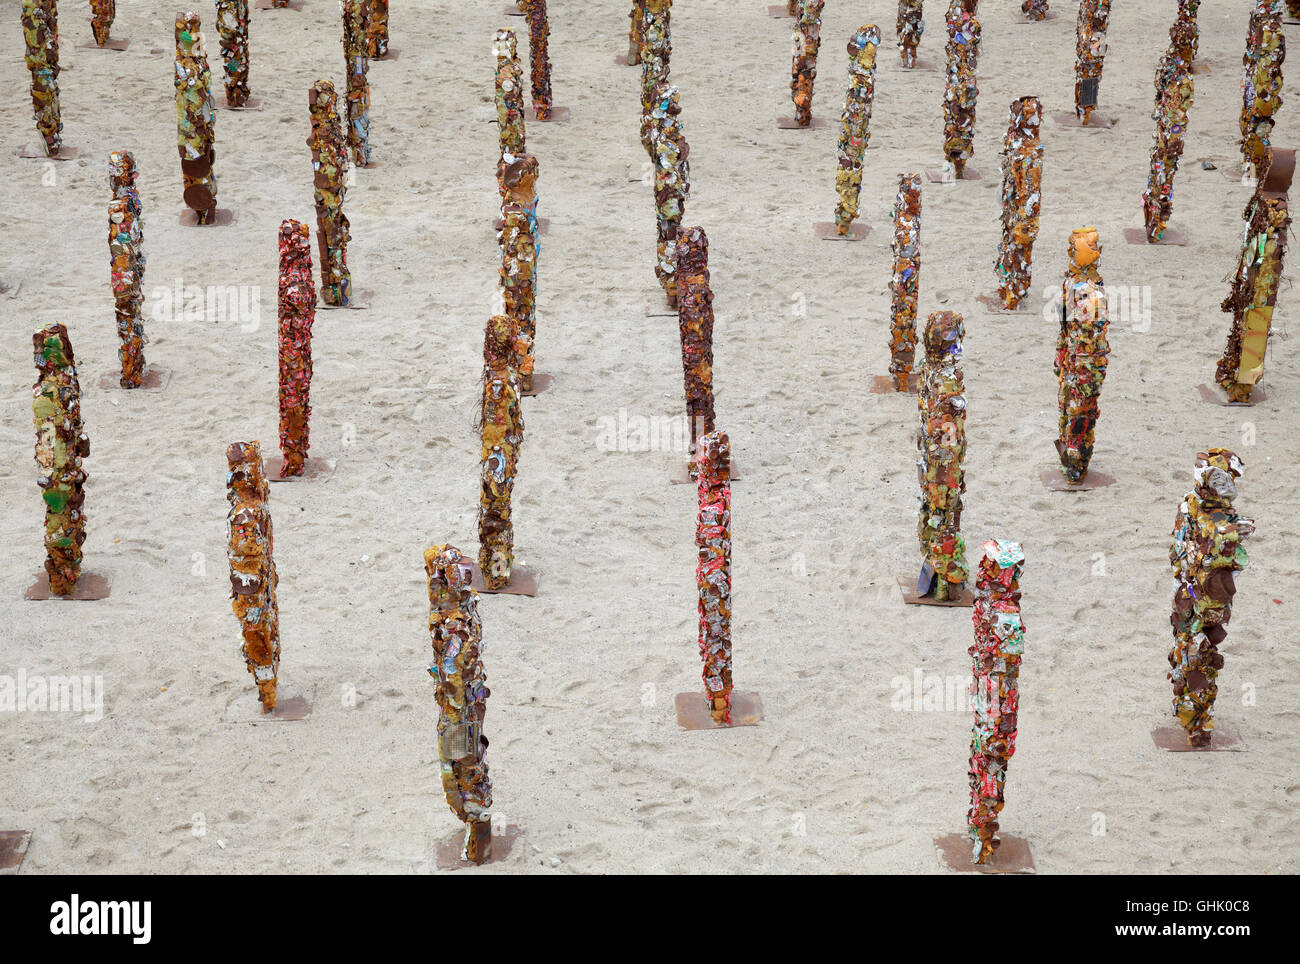 Papelera esculturas de personas ha Schult en Berlín, Alemania Foto de stock